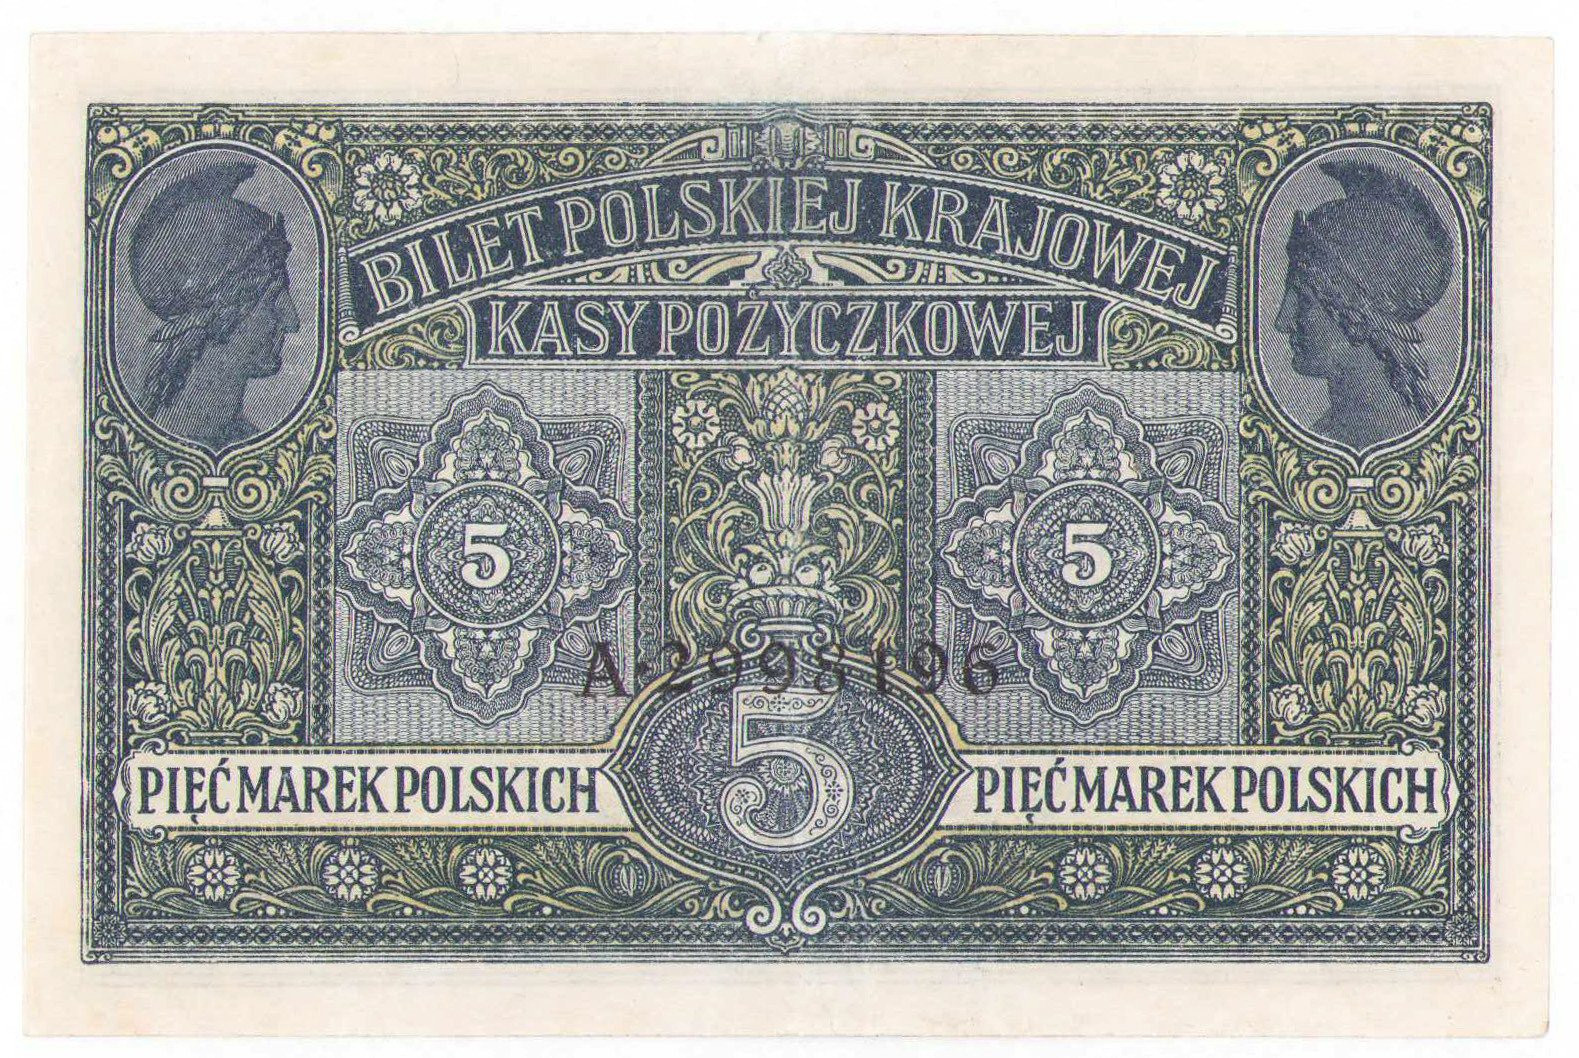 5 marek polskich 1916 seria A, Generał, Biletów